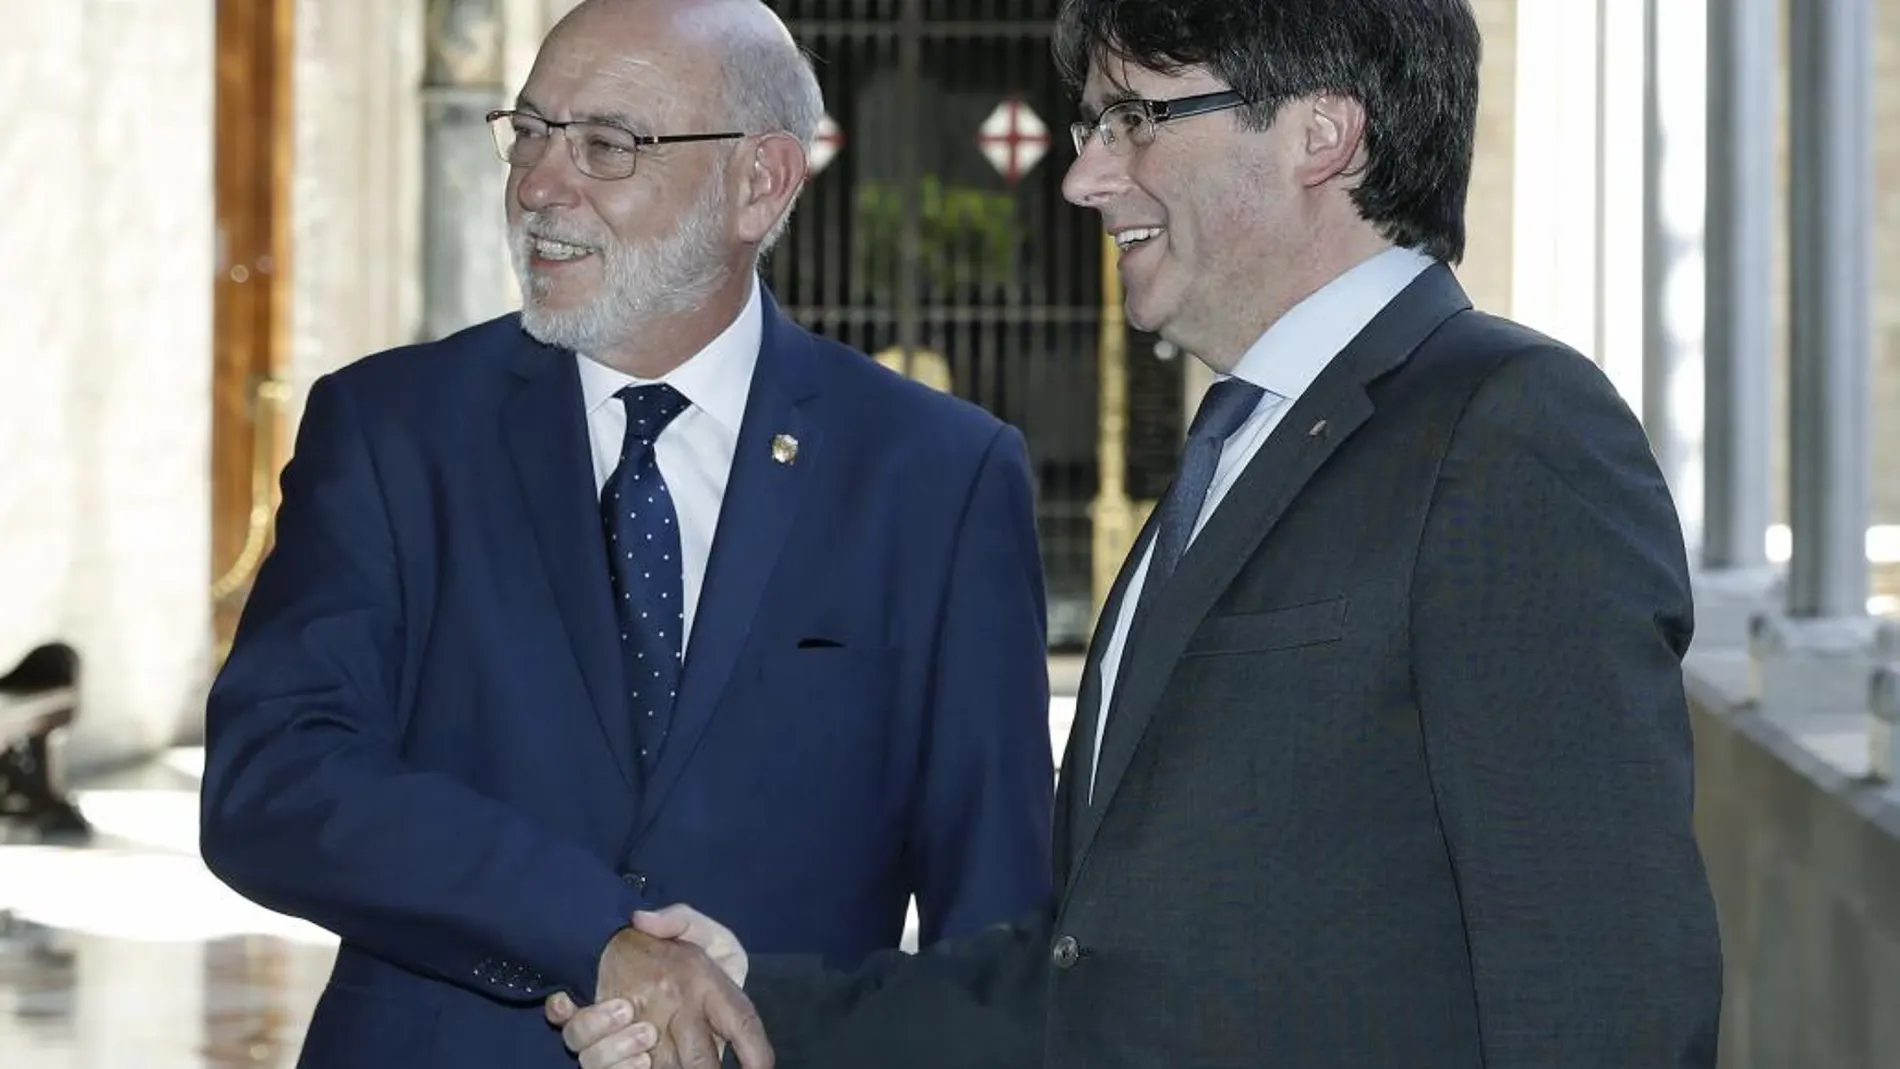 El presidente de la Generalitat, Carles Puigdemont, recibe al nuevo fiscal general del Estado, José Manuel Maza